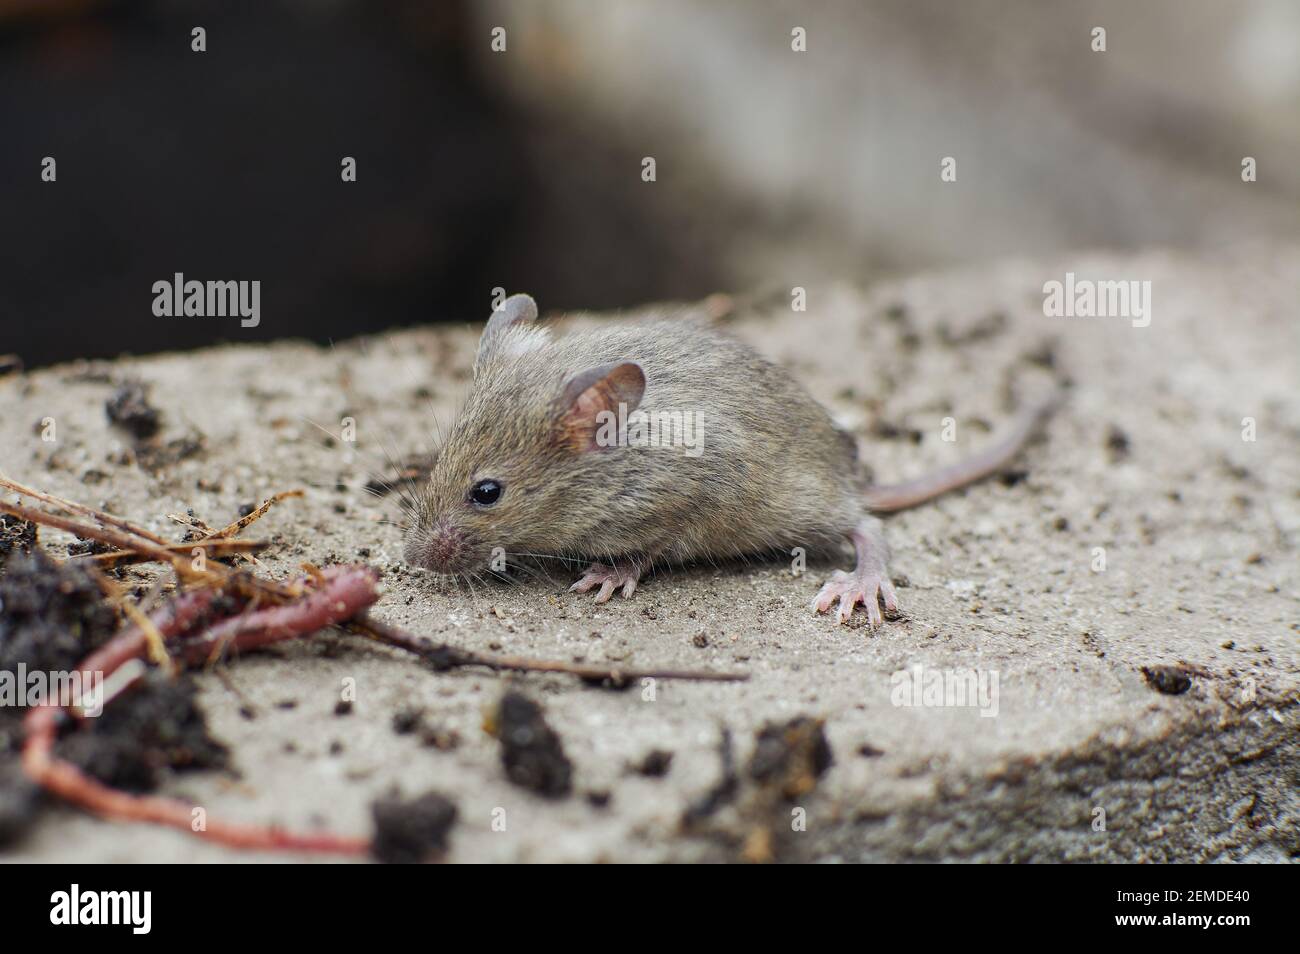 Petite souris grise. Rongeur de terrain. Petite souris effrayée dans l'habitat naturel. Banque D'Images